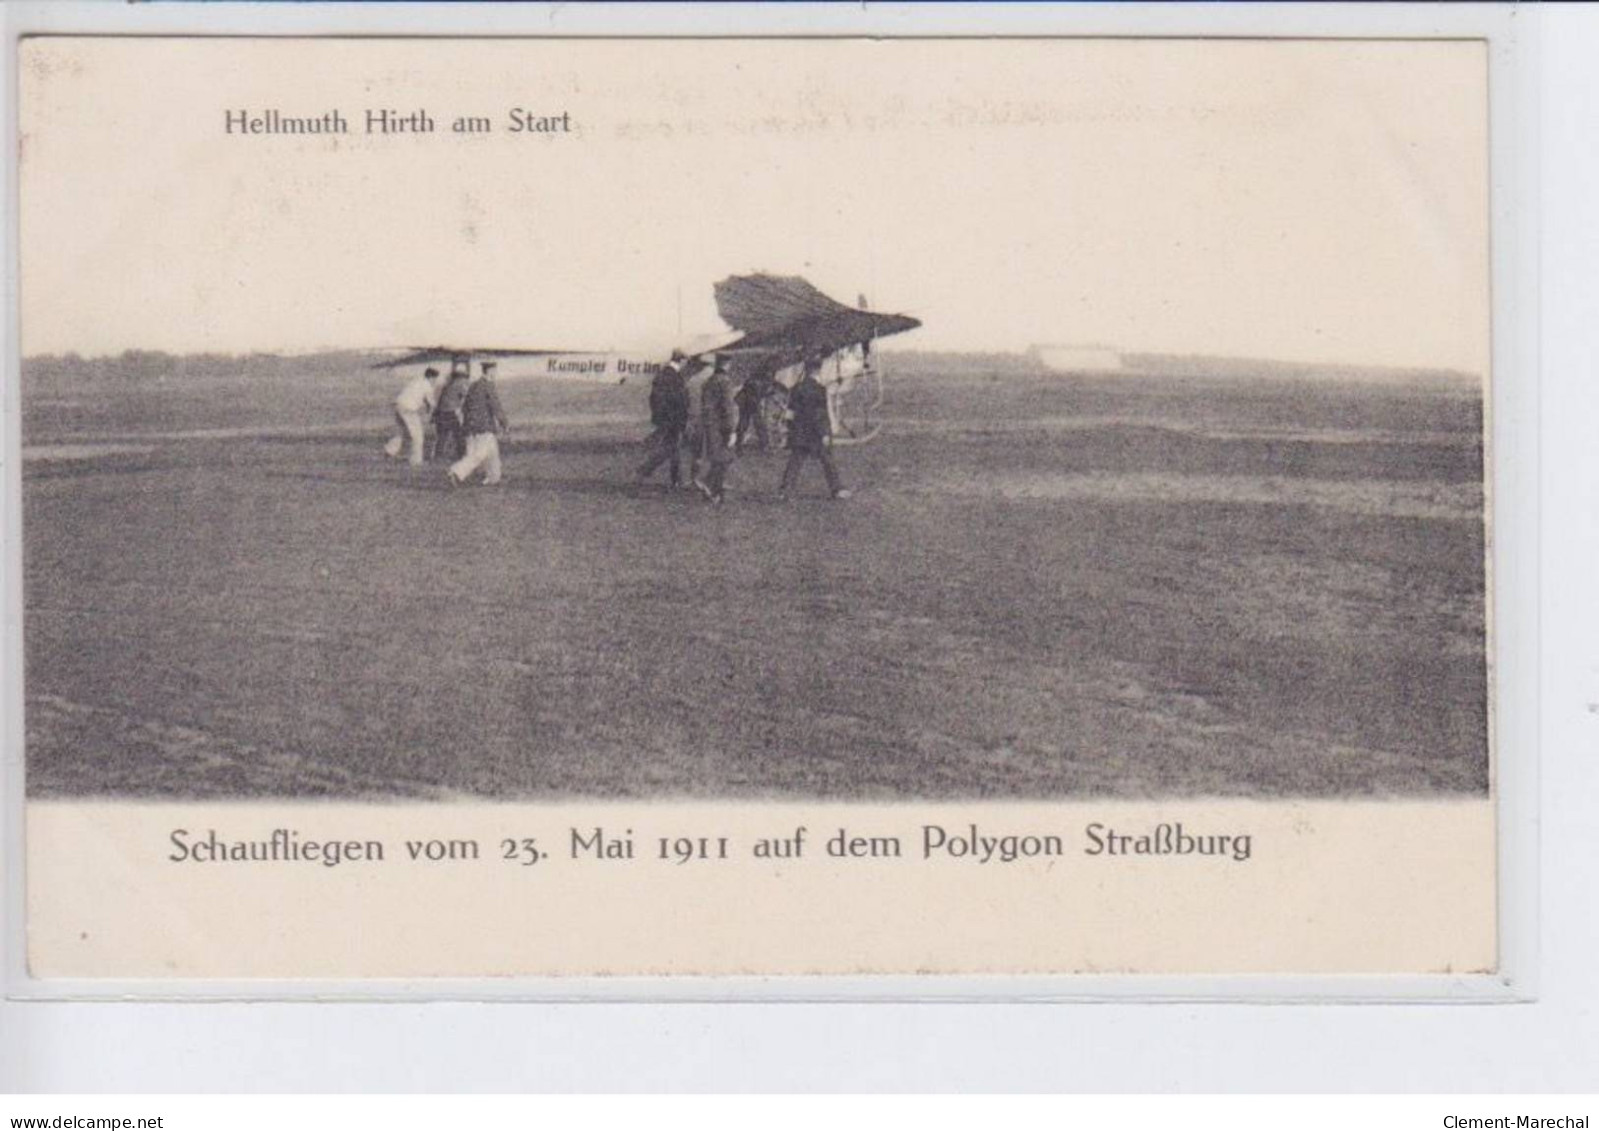 STARSBOURG: Brunhuber Im Fluge, Schaufliegen Vom 23 Mai 1911, Hellmuth Hirth Am Start (Aviation) - Très Bon état - Straatsburg